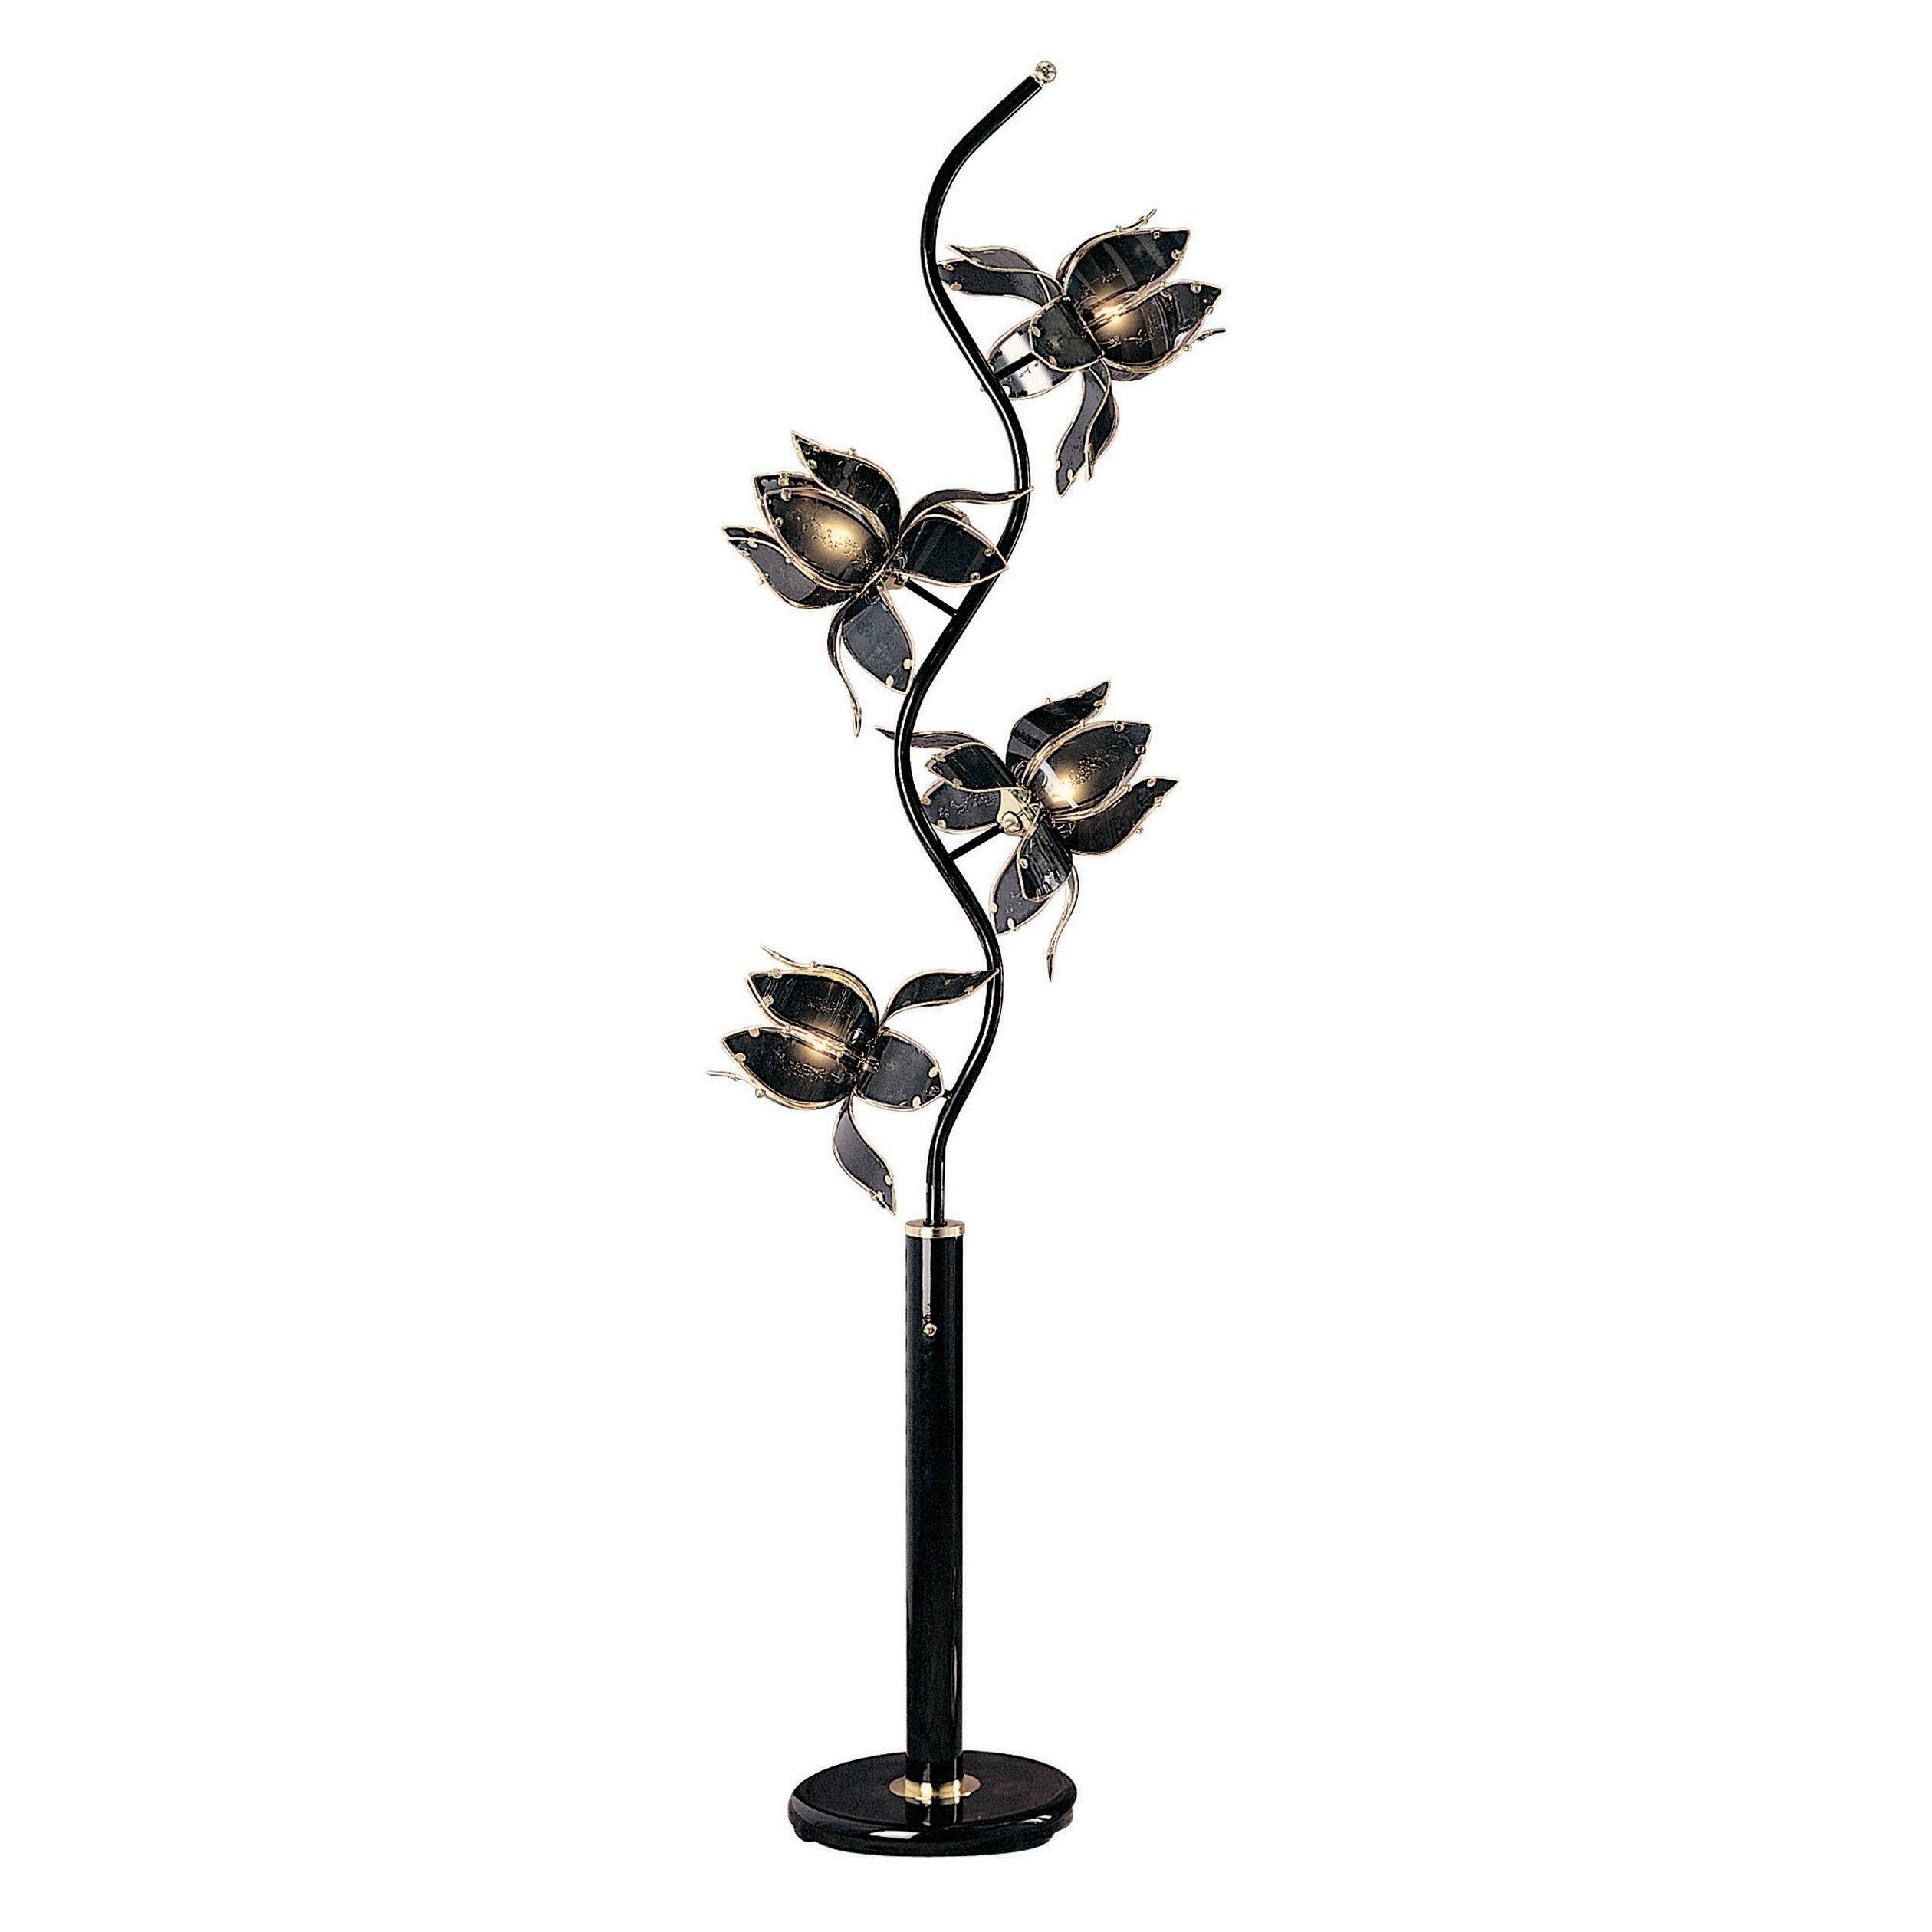 Ore International K-9334KA 73-Inch Flower Floor Lamp, Black